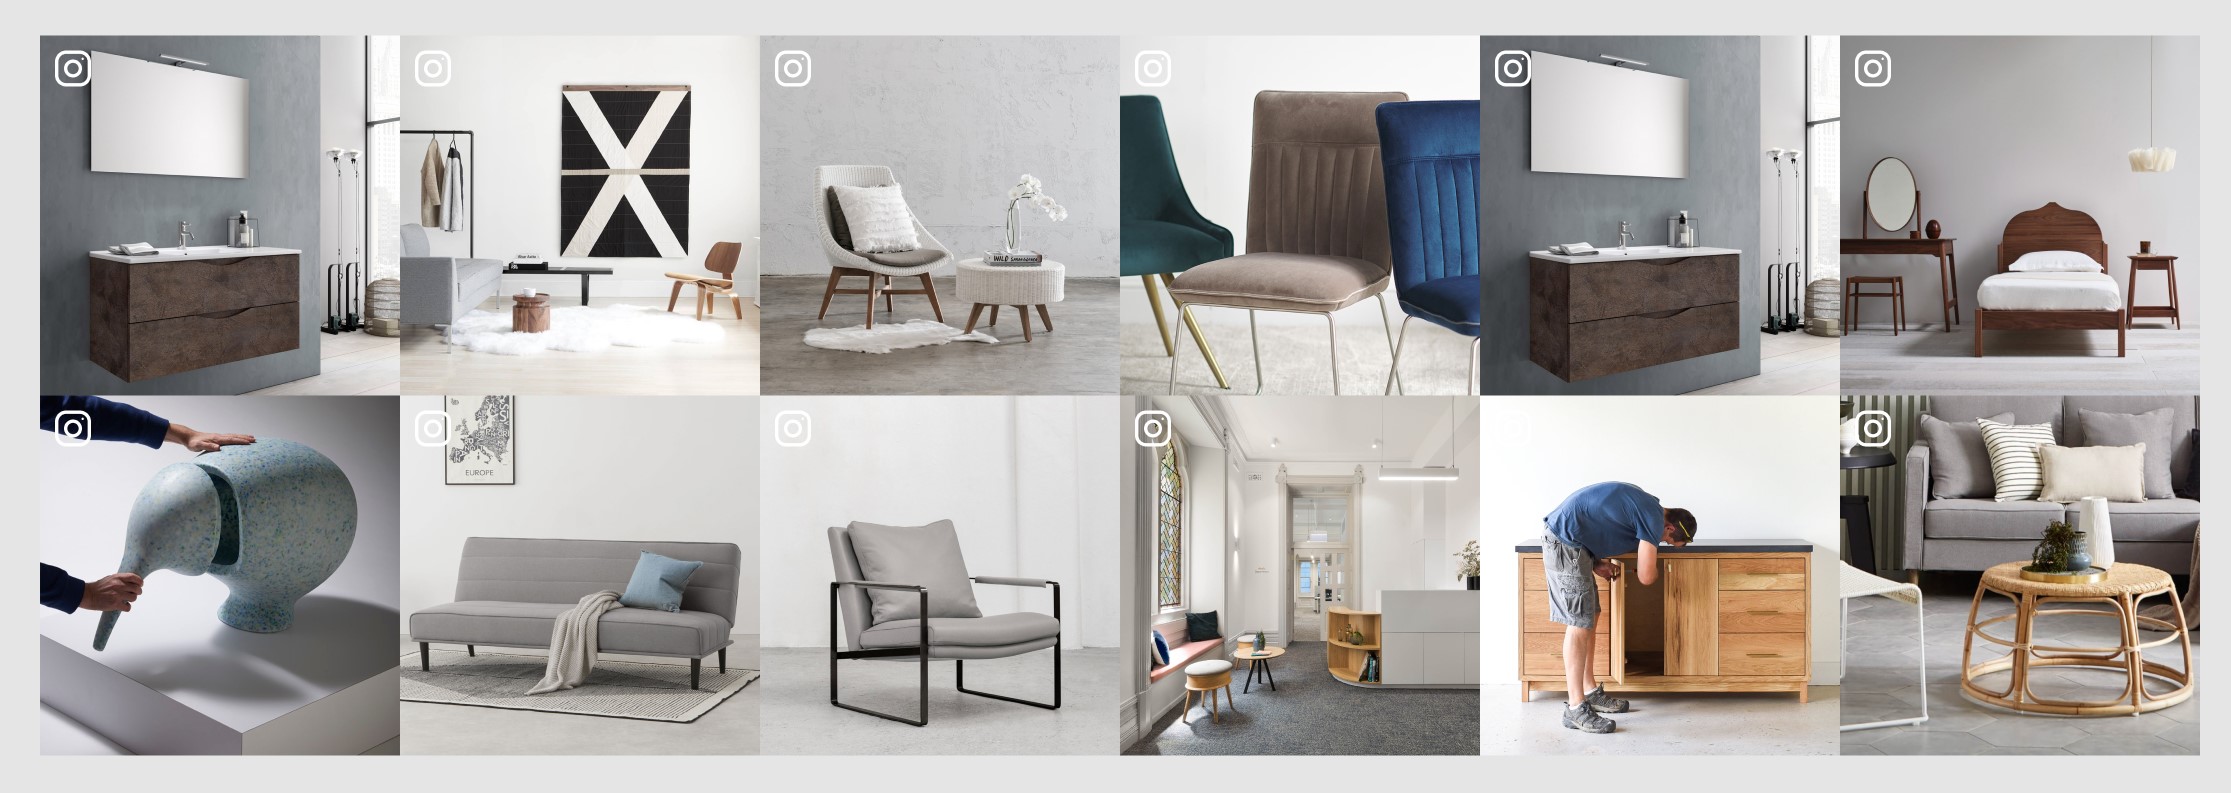 furniture-instagram